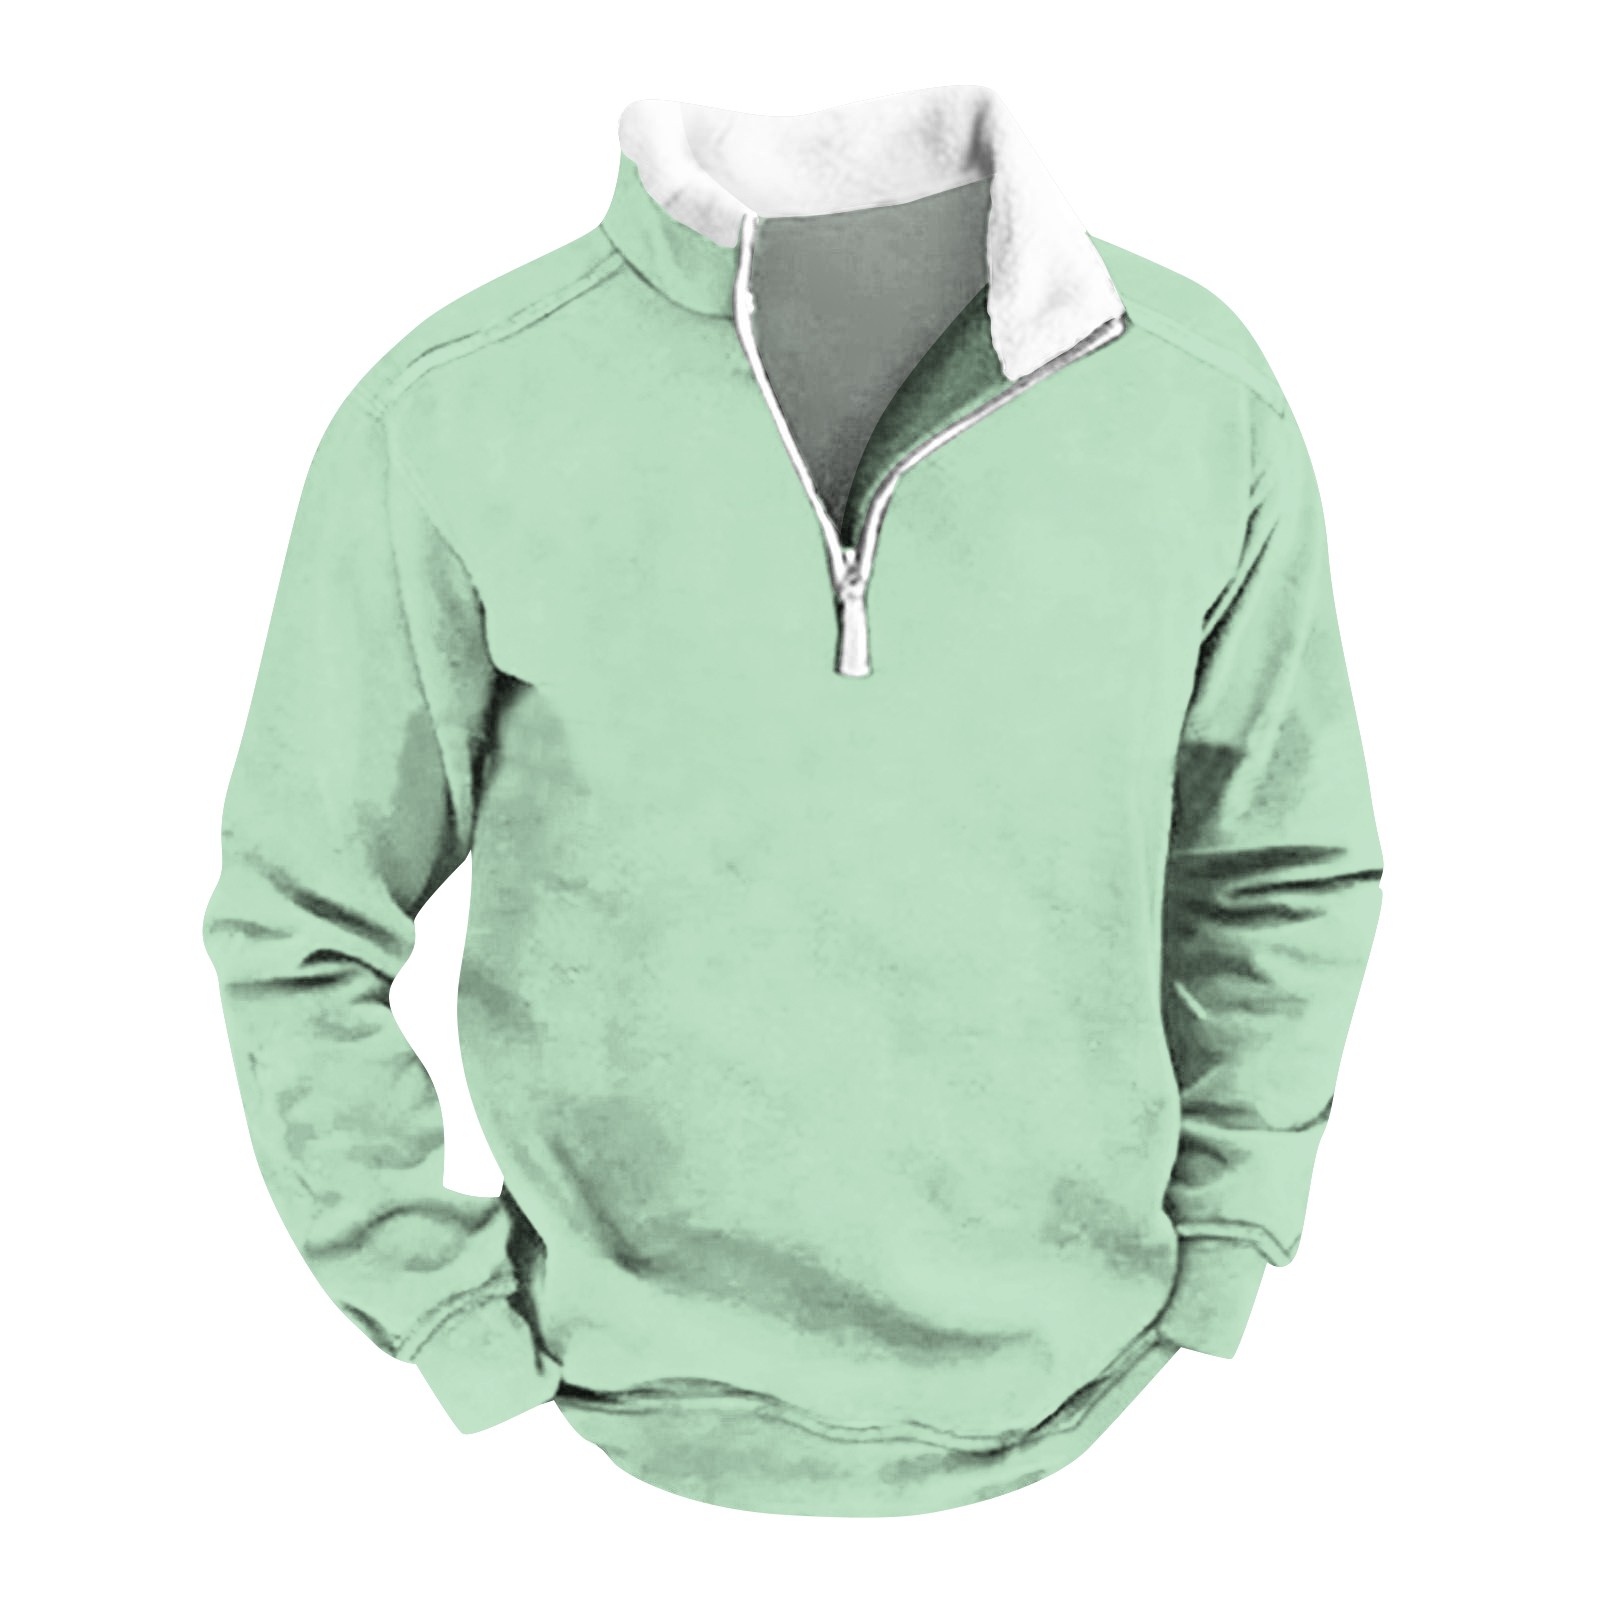 Ydkzymd Mens Zip Up Sweatshirt 4XL Heavy Hoodies For Men Mint Green Zip ...